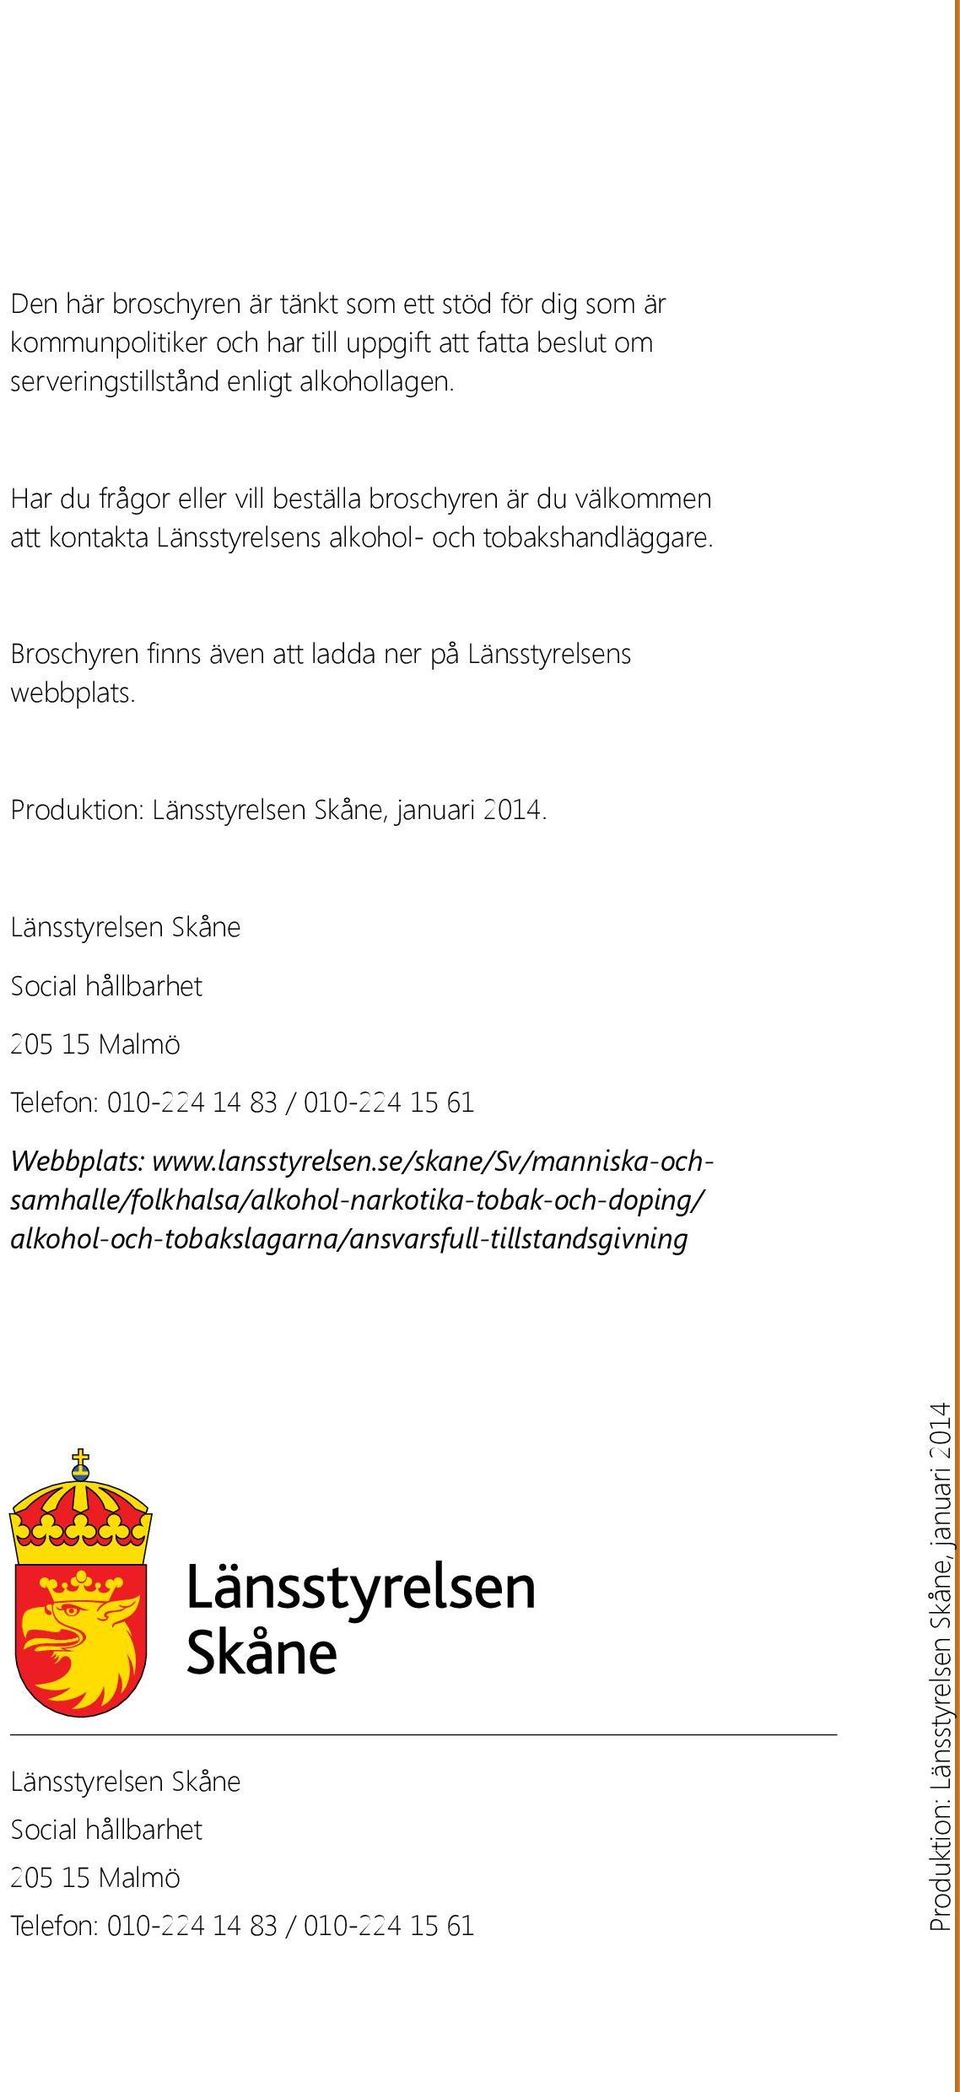 Produktion: Länsstyrelsen Skåne, januari 2014. Länsstyrelsen Skåne Social hållbarhet 205 15 Malmö Telefon: 010-224 14 83 / 010-224 15 61 Webbplats: www.lansstyrelsen.